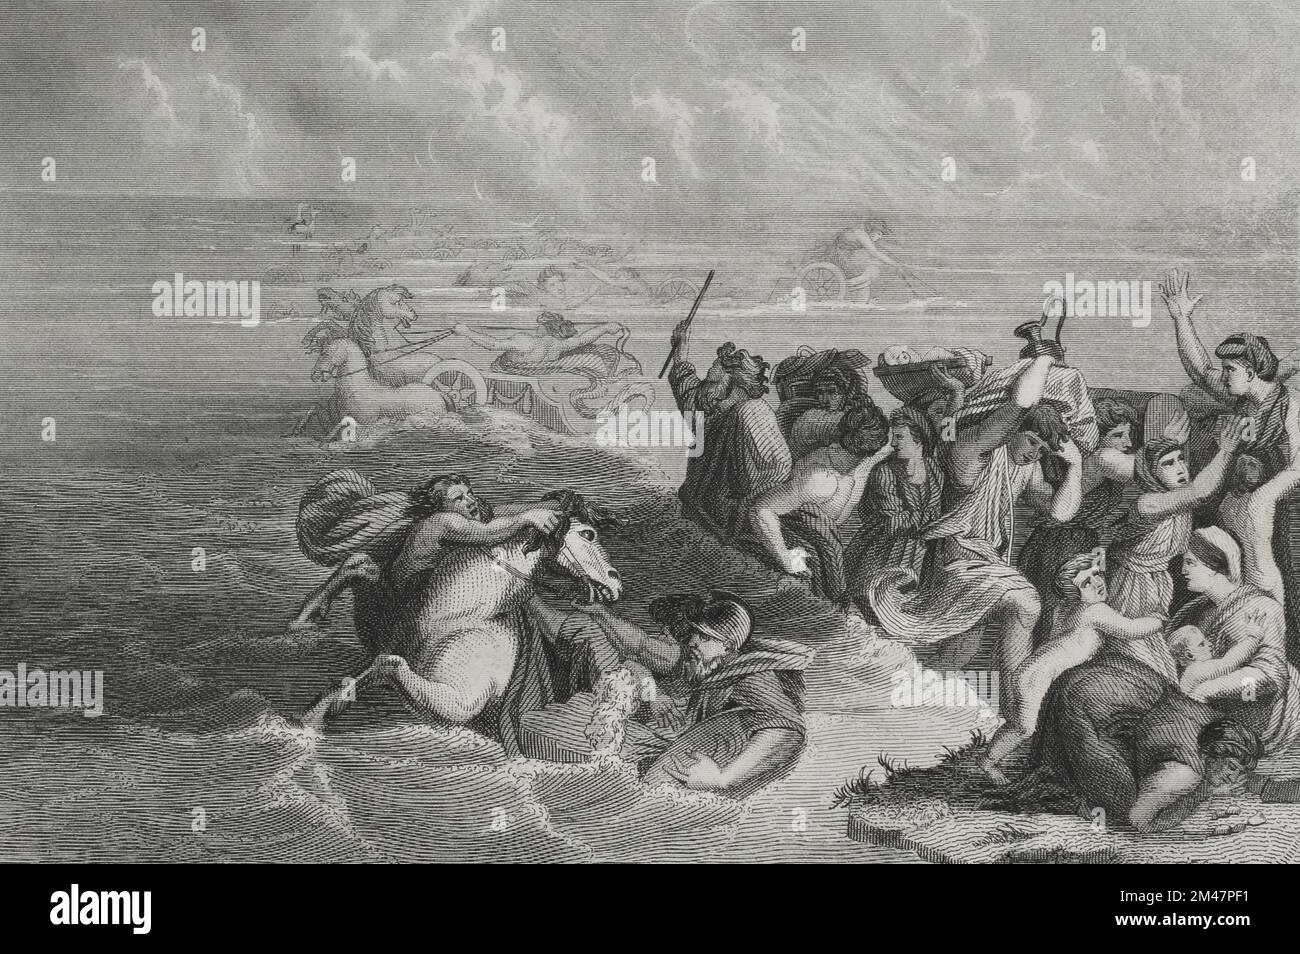 Old Testament. Exodus. The passage of the Red Sea. Engraving by A. Roca. 'Los Héroes y las Grandezas de la Tierra'. Volume I. 1854. Author: Antonio Roca Sallent (1813-1864). Spanish engraver. Stock Photo